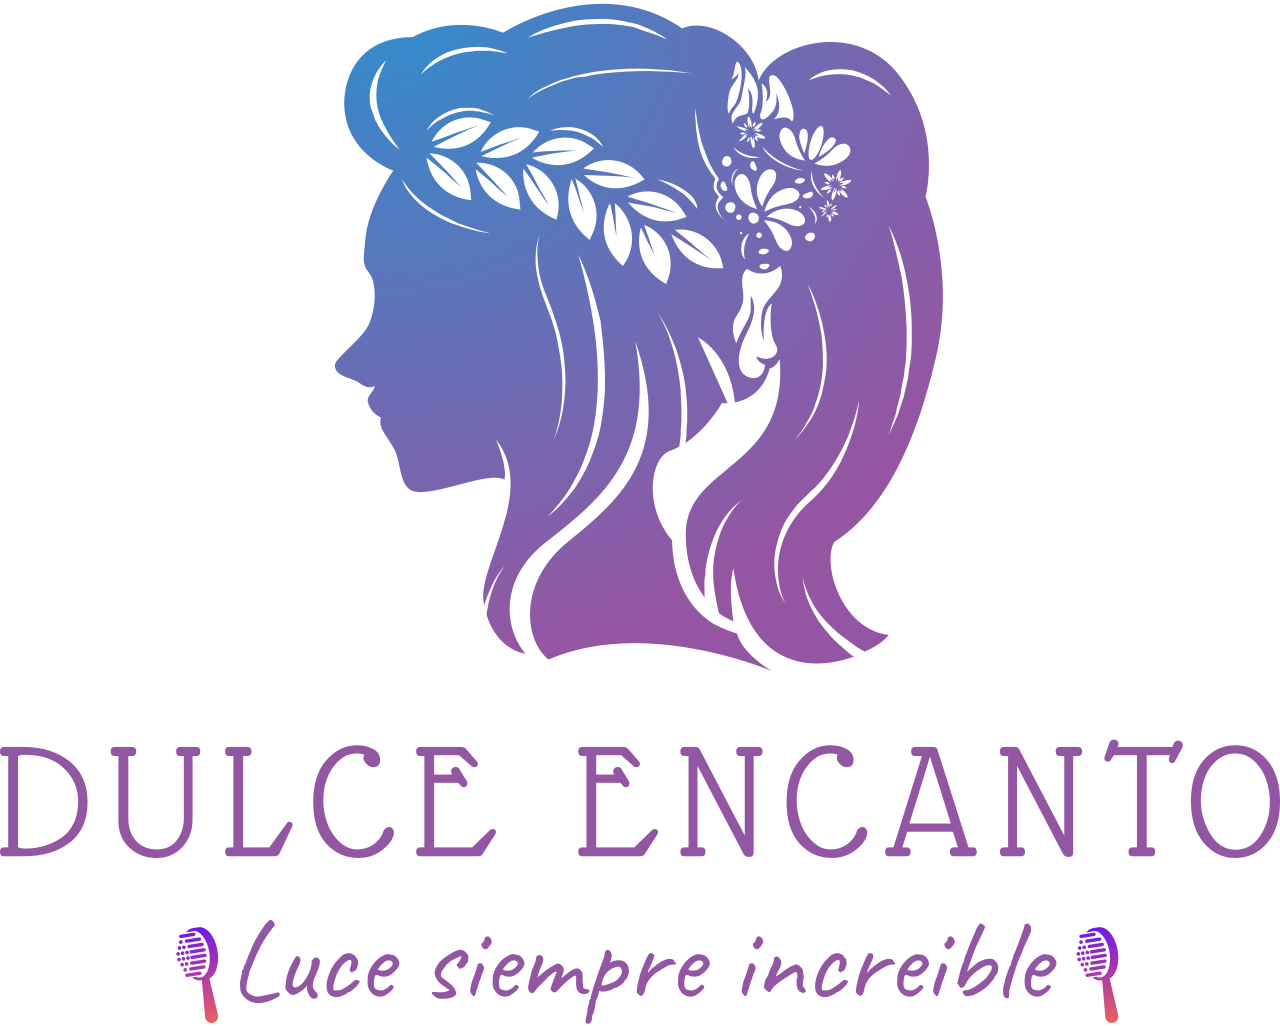 DULCE ENCANTO's web page